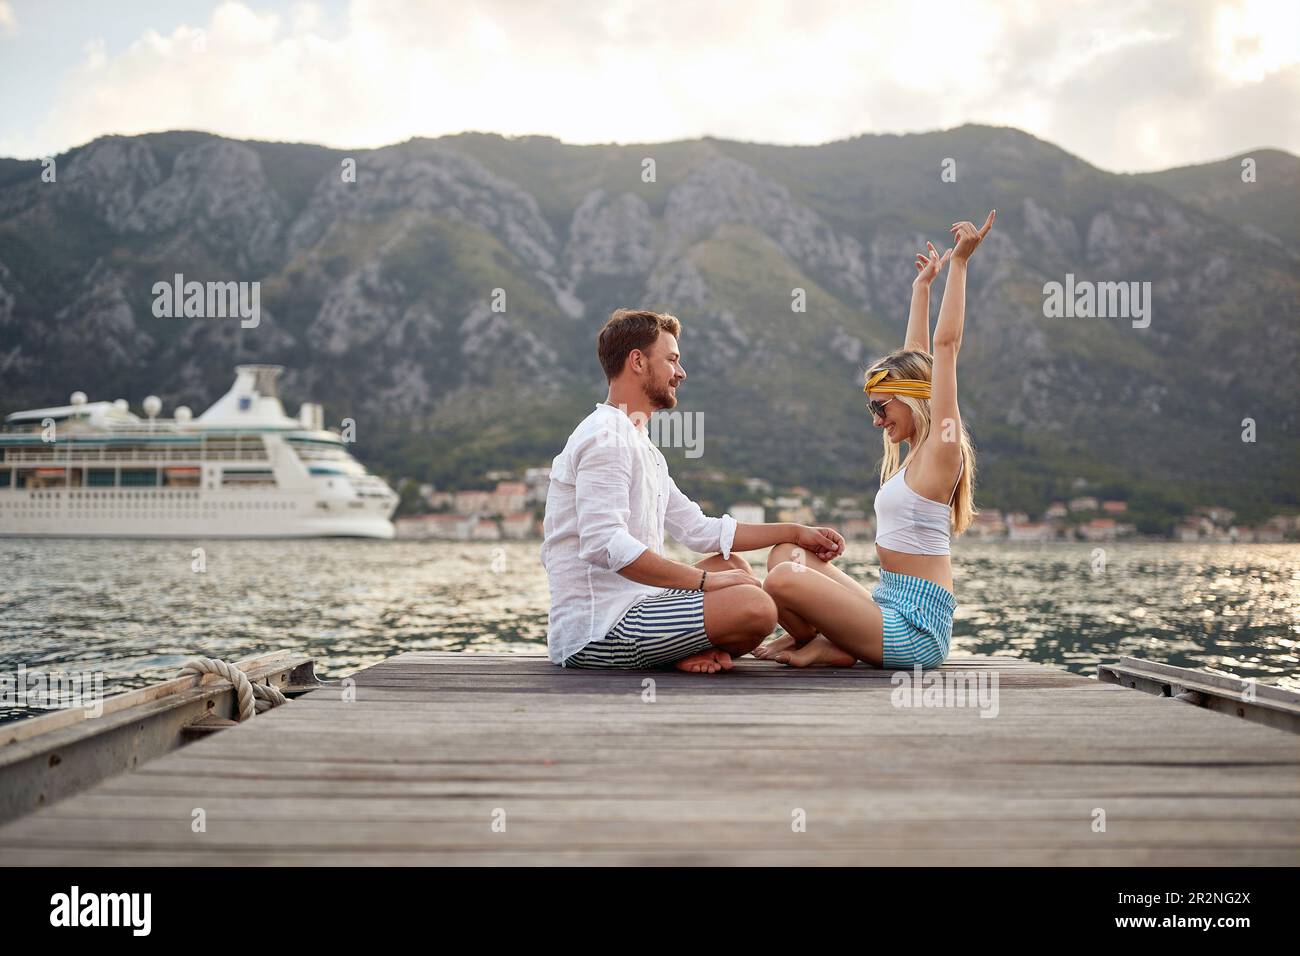 Am See abhängen. Romantischer Urlaub. Ein Paar, das am Seeufer sitzt und sich amüsiert Stockfoto